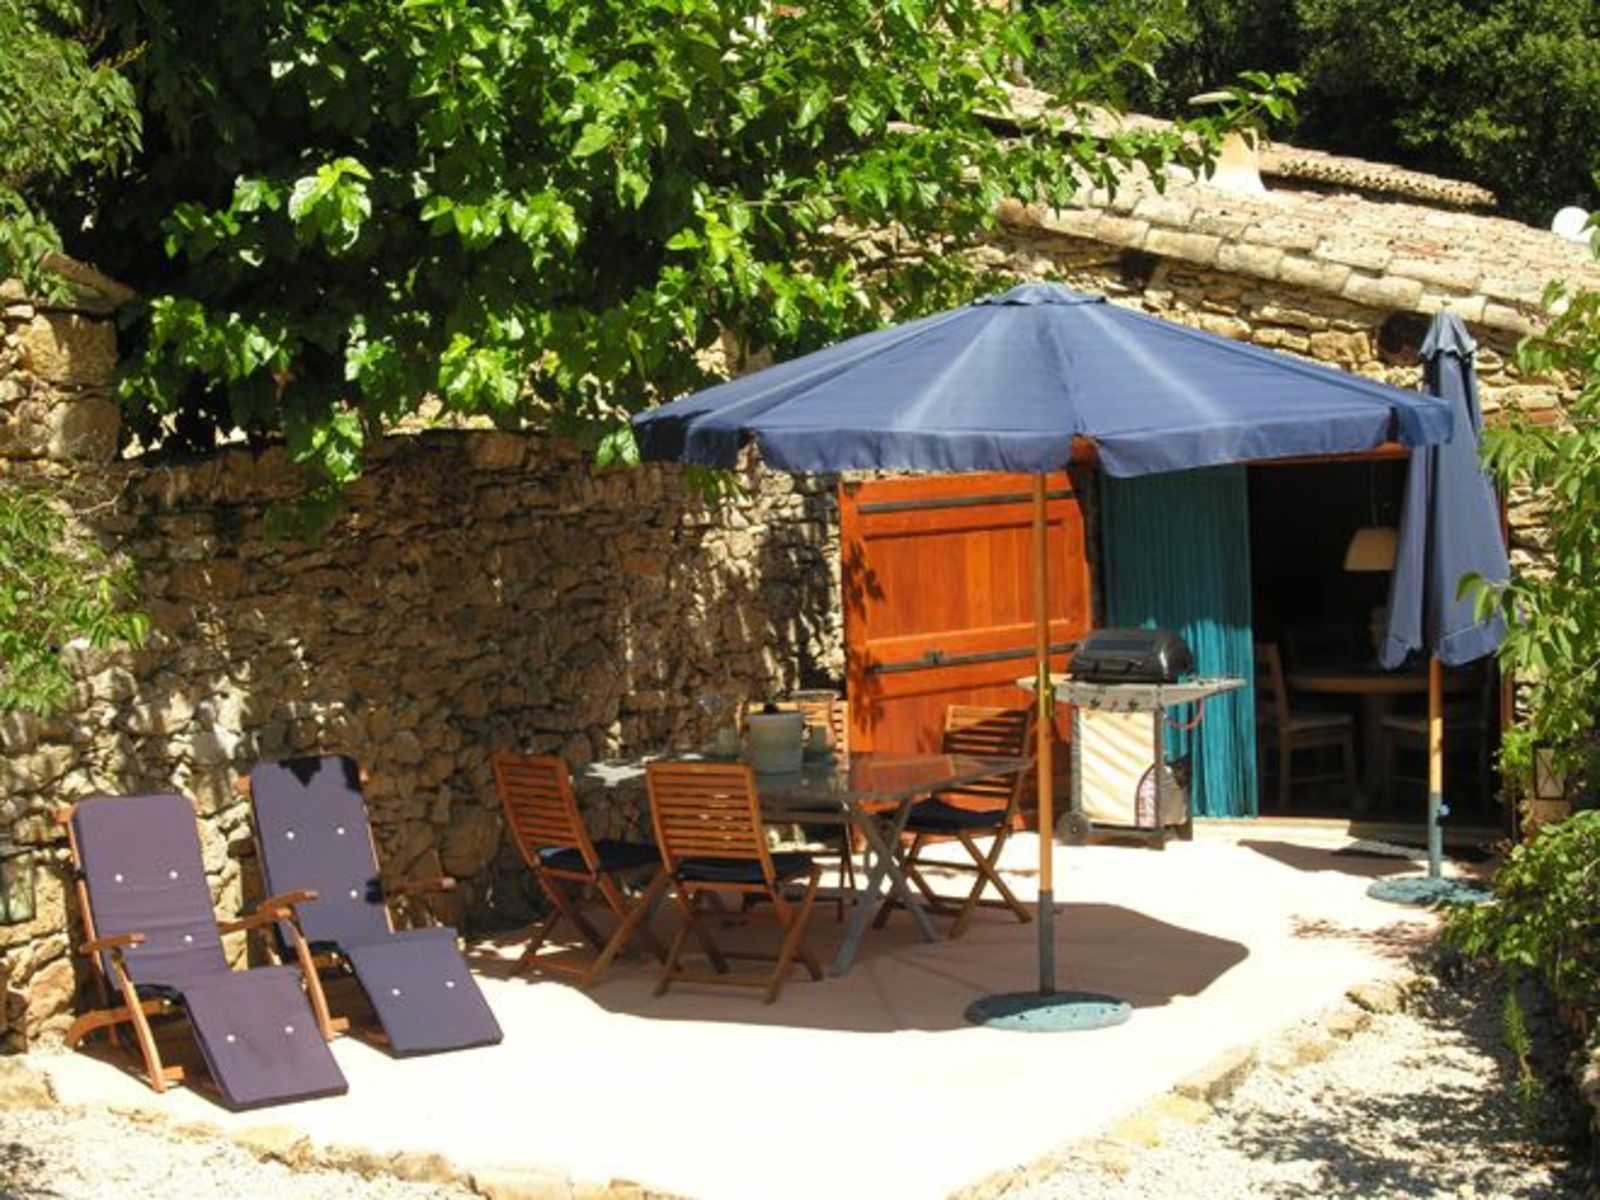 Le Paradis - gîte vakantiehuis met zwembad in Zuid-Frankrijk